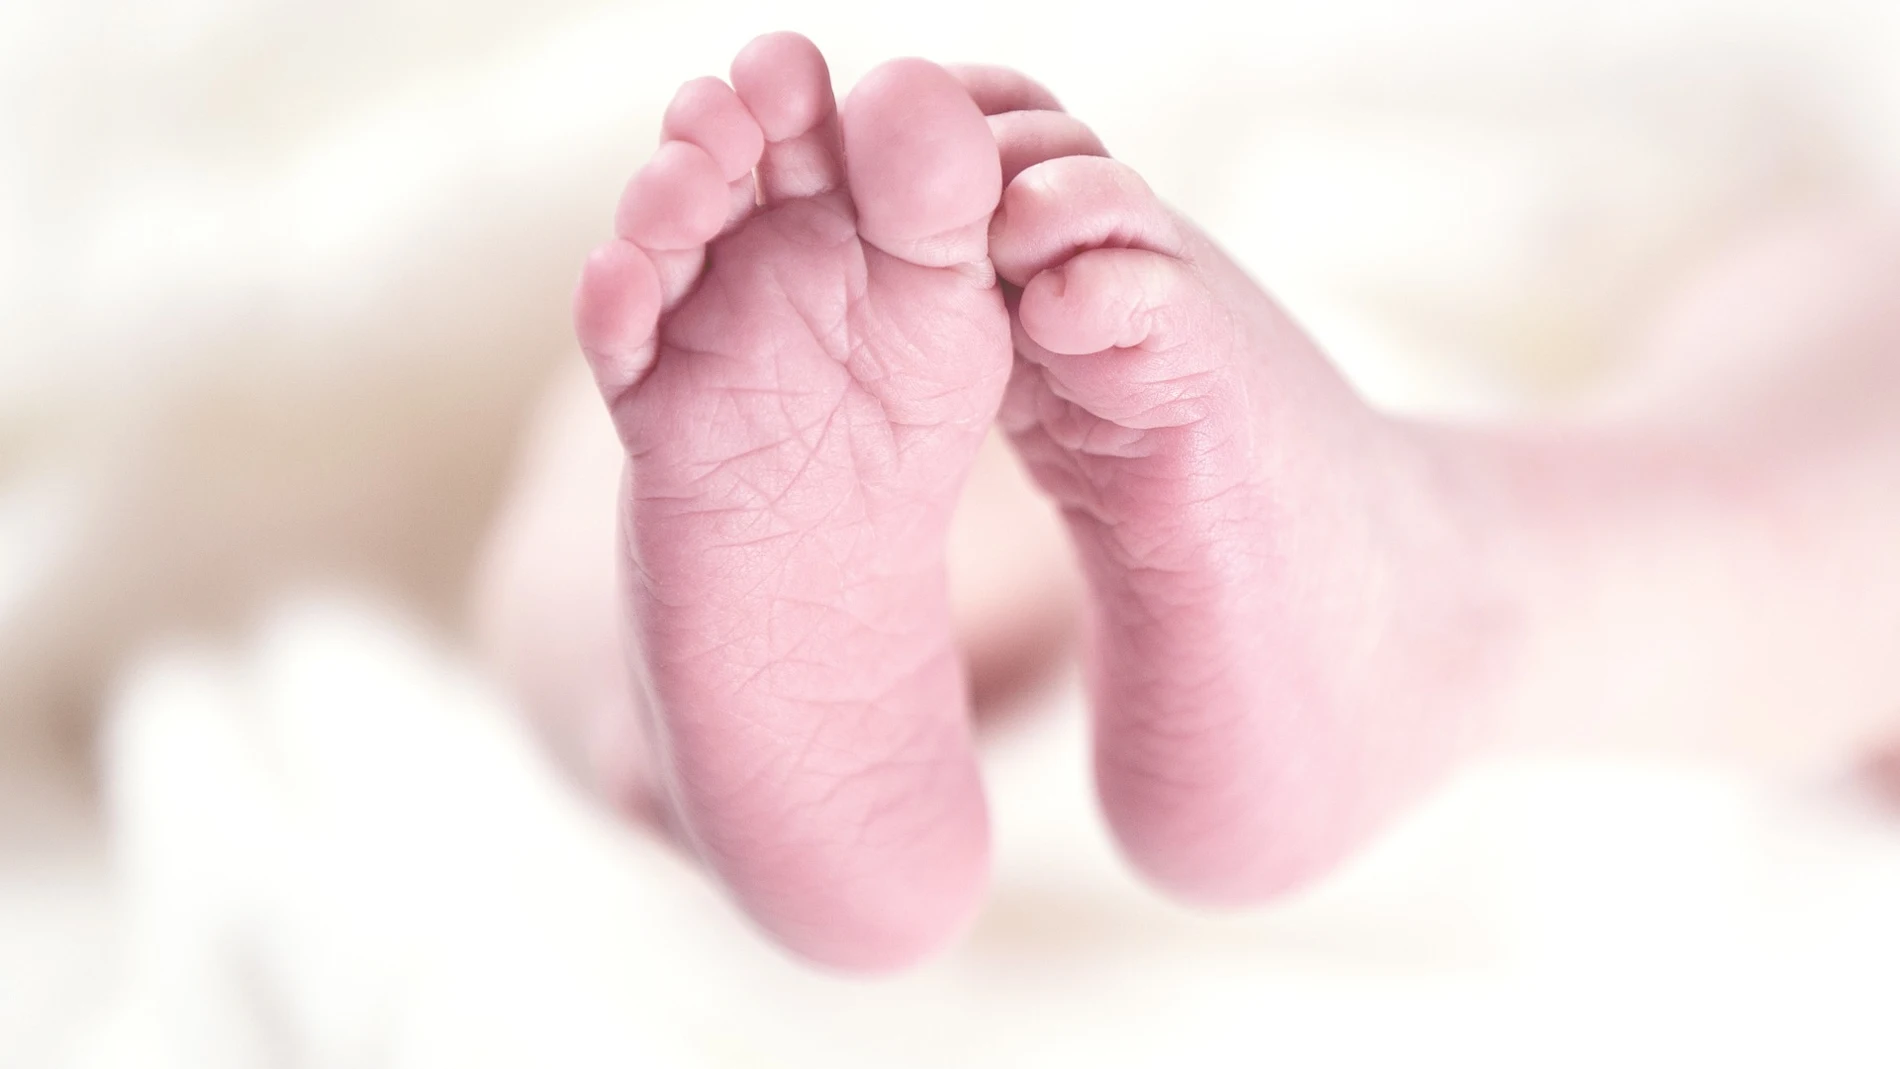 Hallan a dos bebés muertos en un piso familiar en Francia